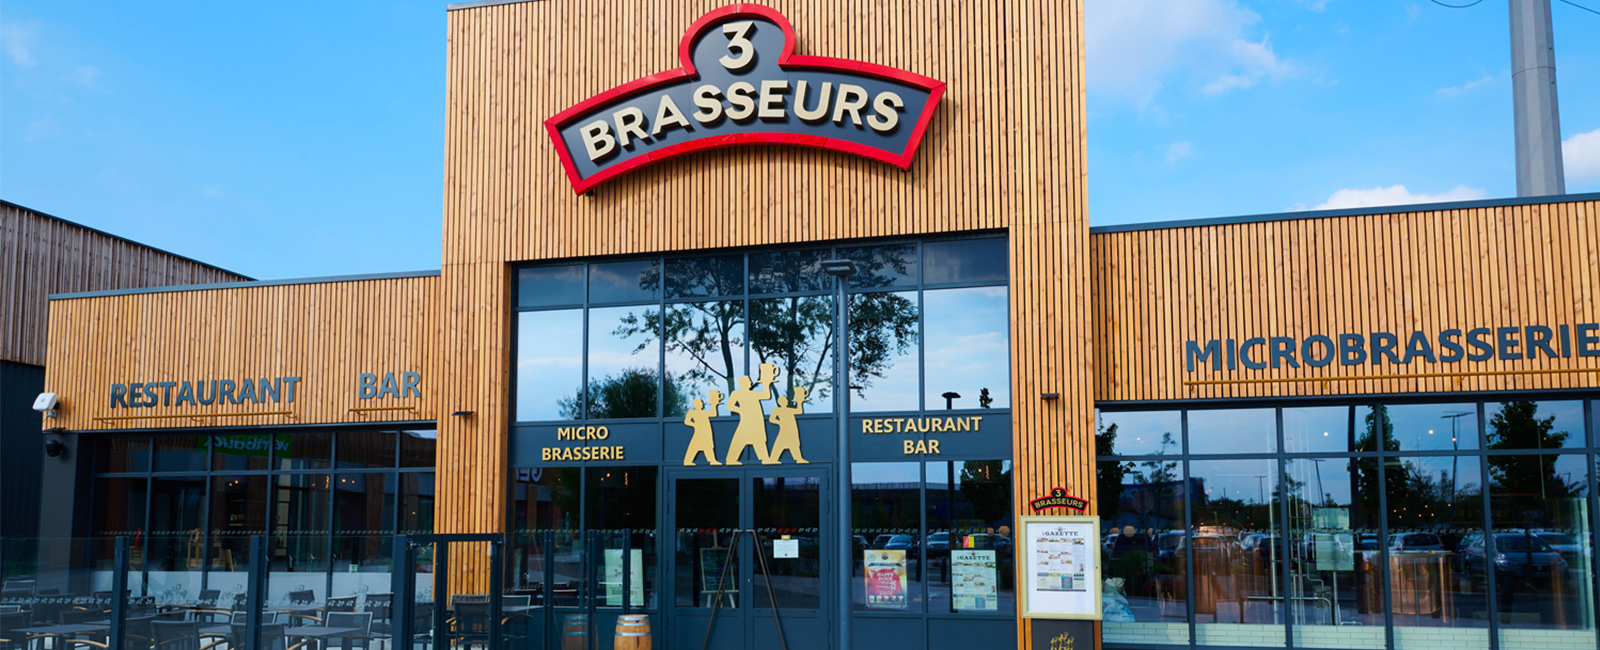 Lo storico brand francese di microbirrerie e ristoranti 3 Brasseurs  alla conquista del mercato italiano